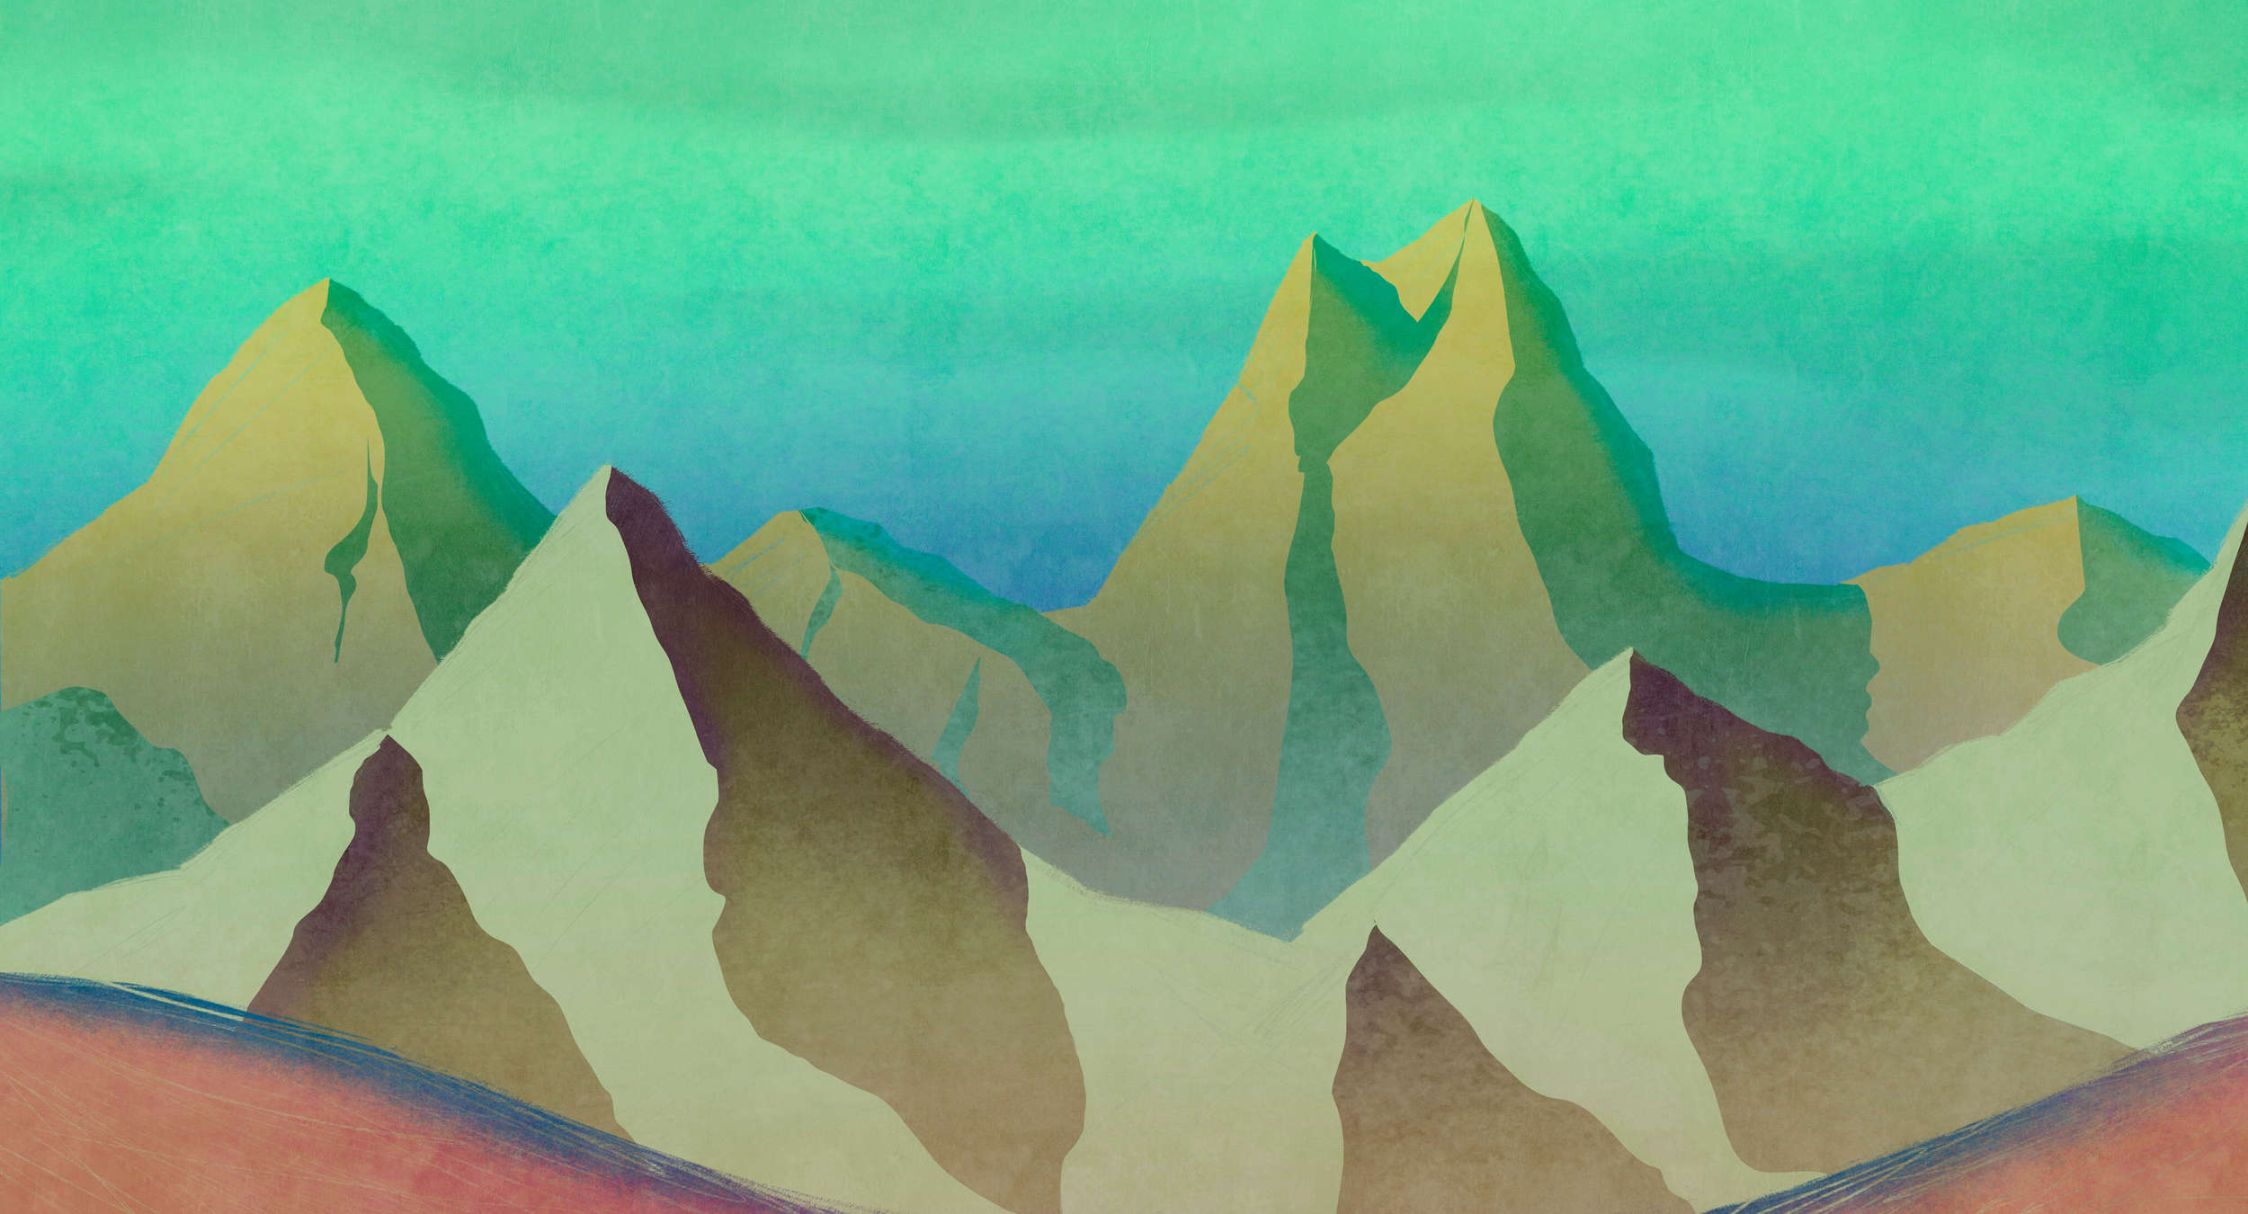             Digital behang »altitude 2« - Abstracte bergen in groen met vintage pleisterstructuur - Glad, licht glanzend premium vliesmateriaal
        